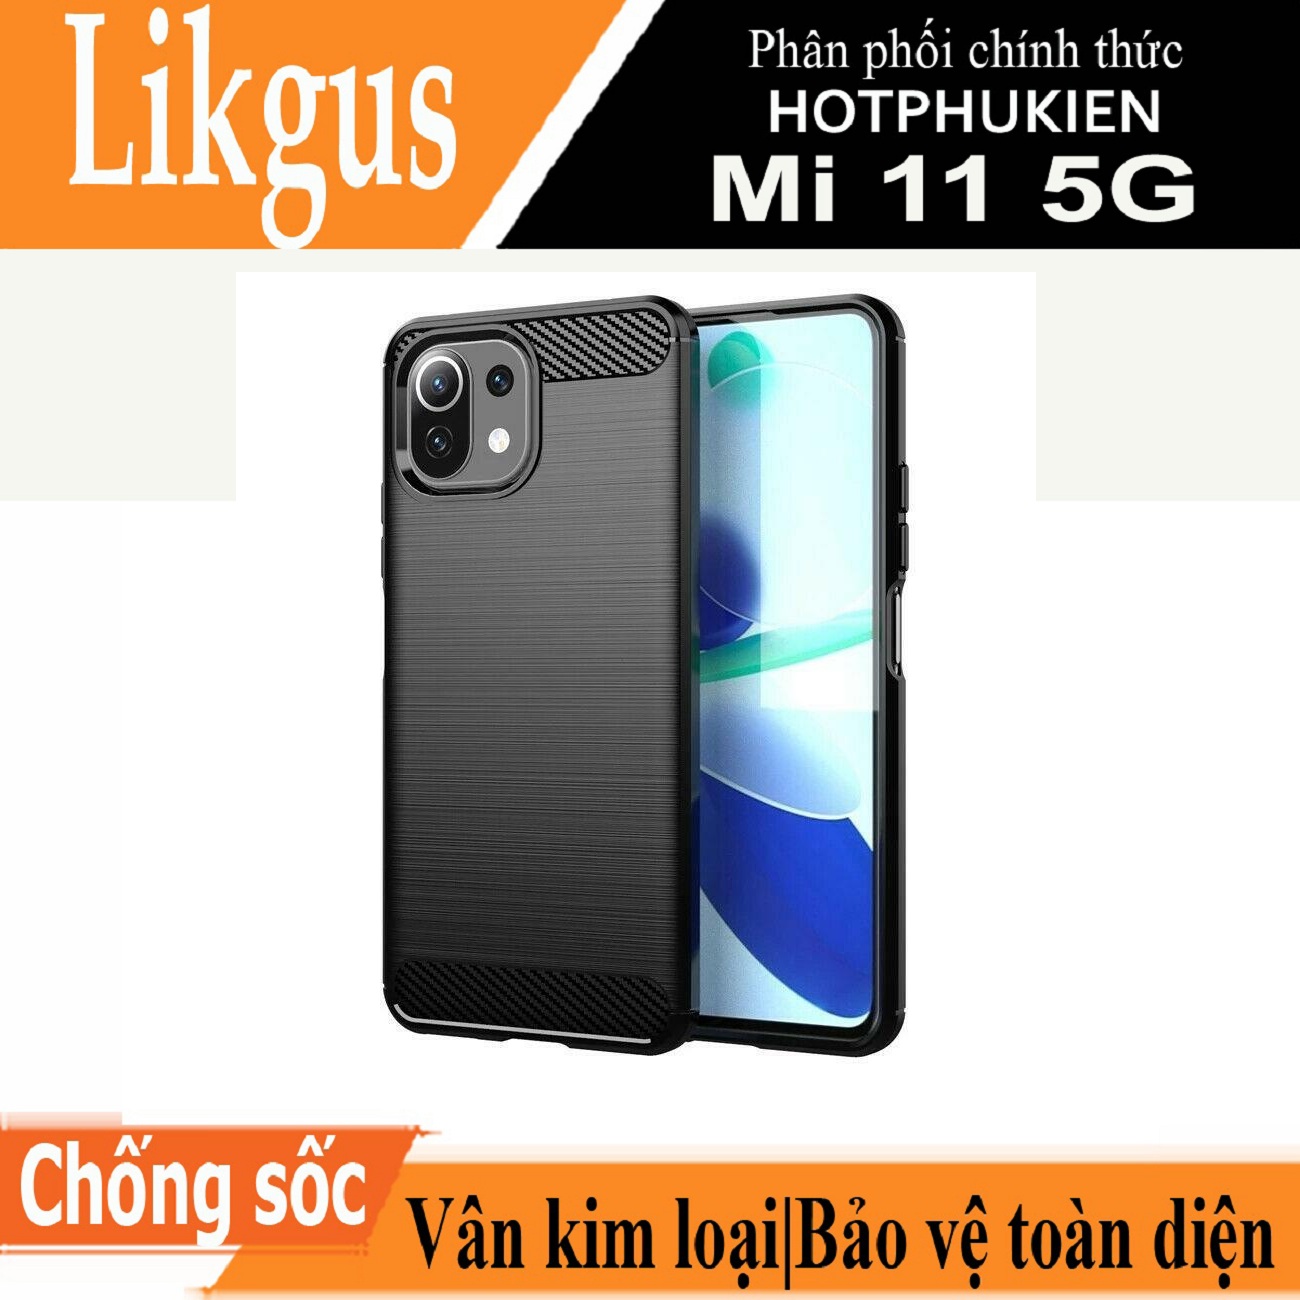 Ốp lưng chống sốc vân kim loại cho Xiaomi Mi 11 5G hiệu Likgus (bảo vệ toàn diện, chống va đập) - hàng nhập khẩu